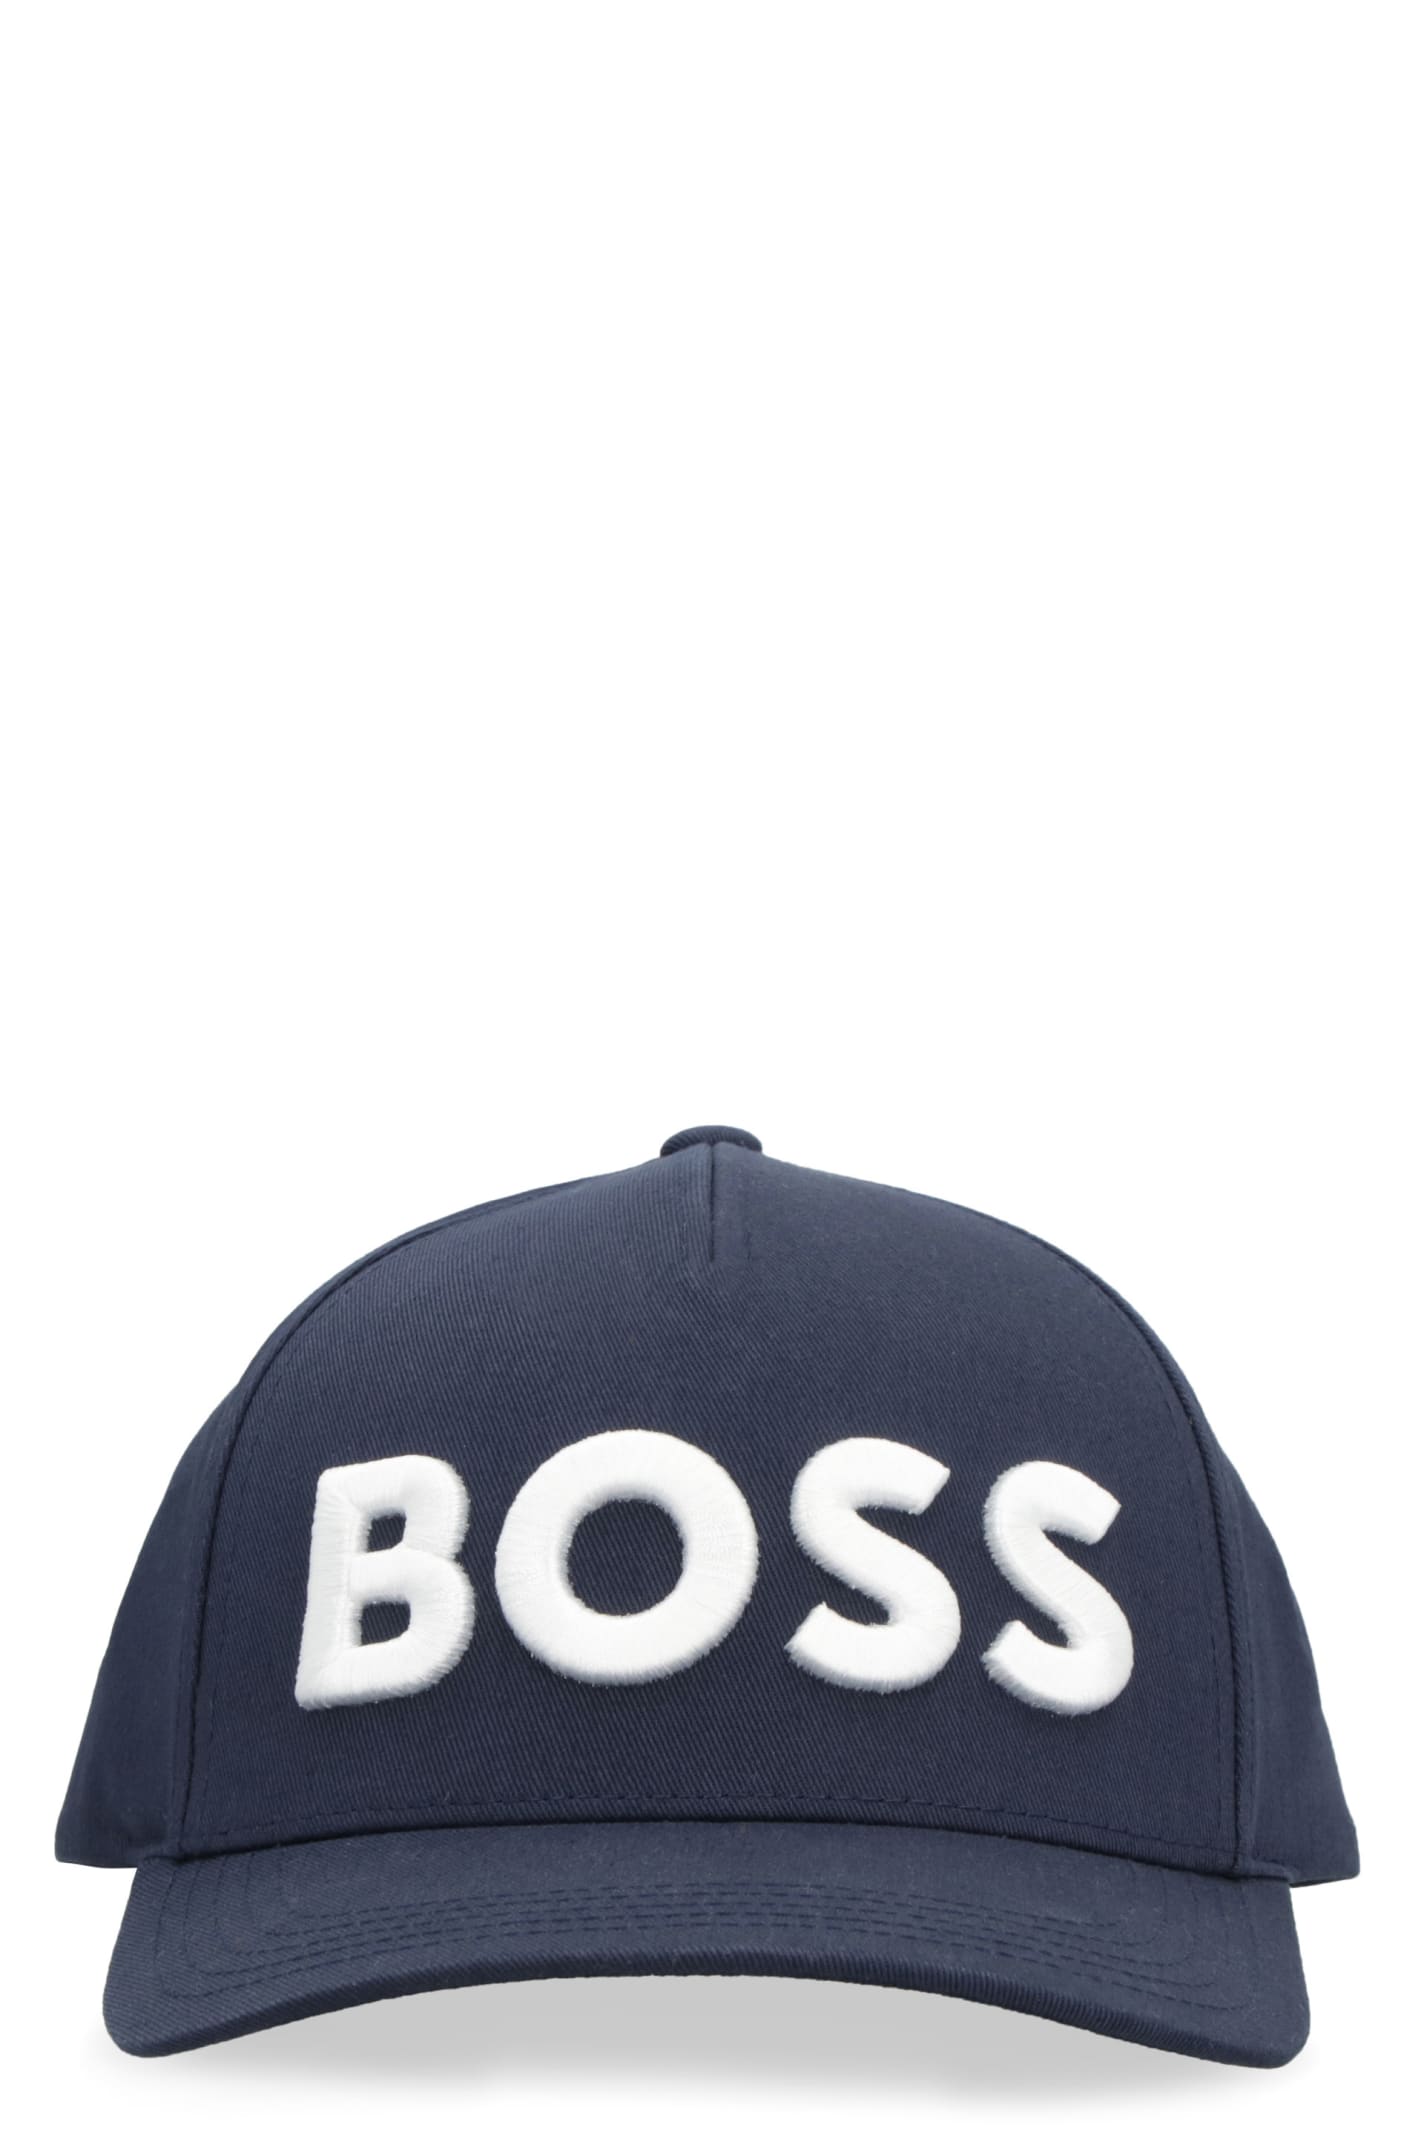 HUGO BOSS Cap for Men | ModeSens